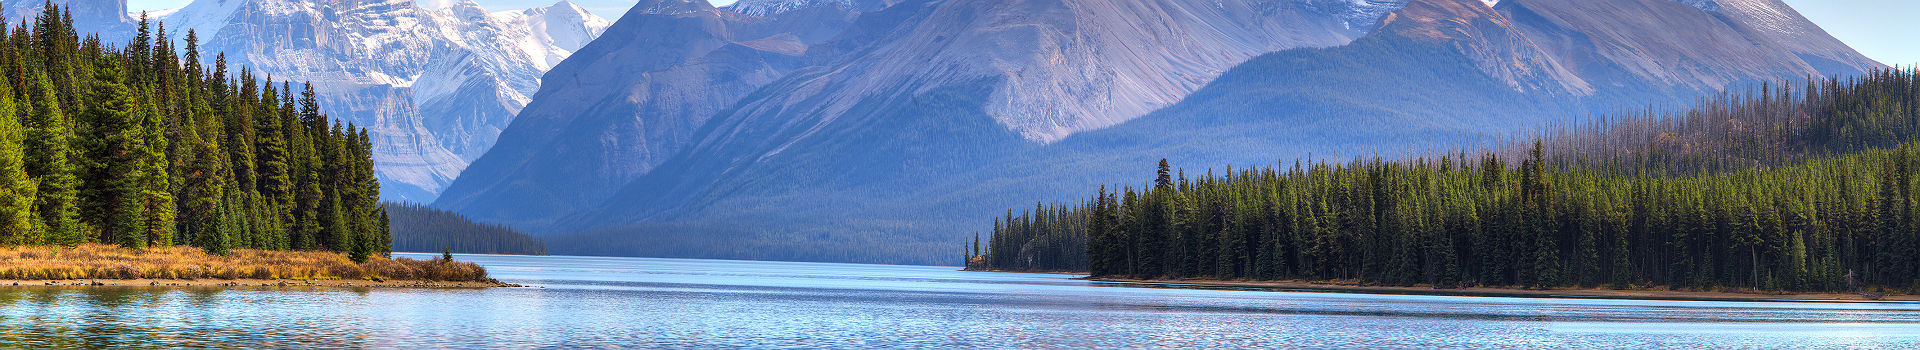 Le Lac Maligne au Parc national de Jasper - Canada